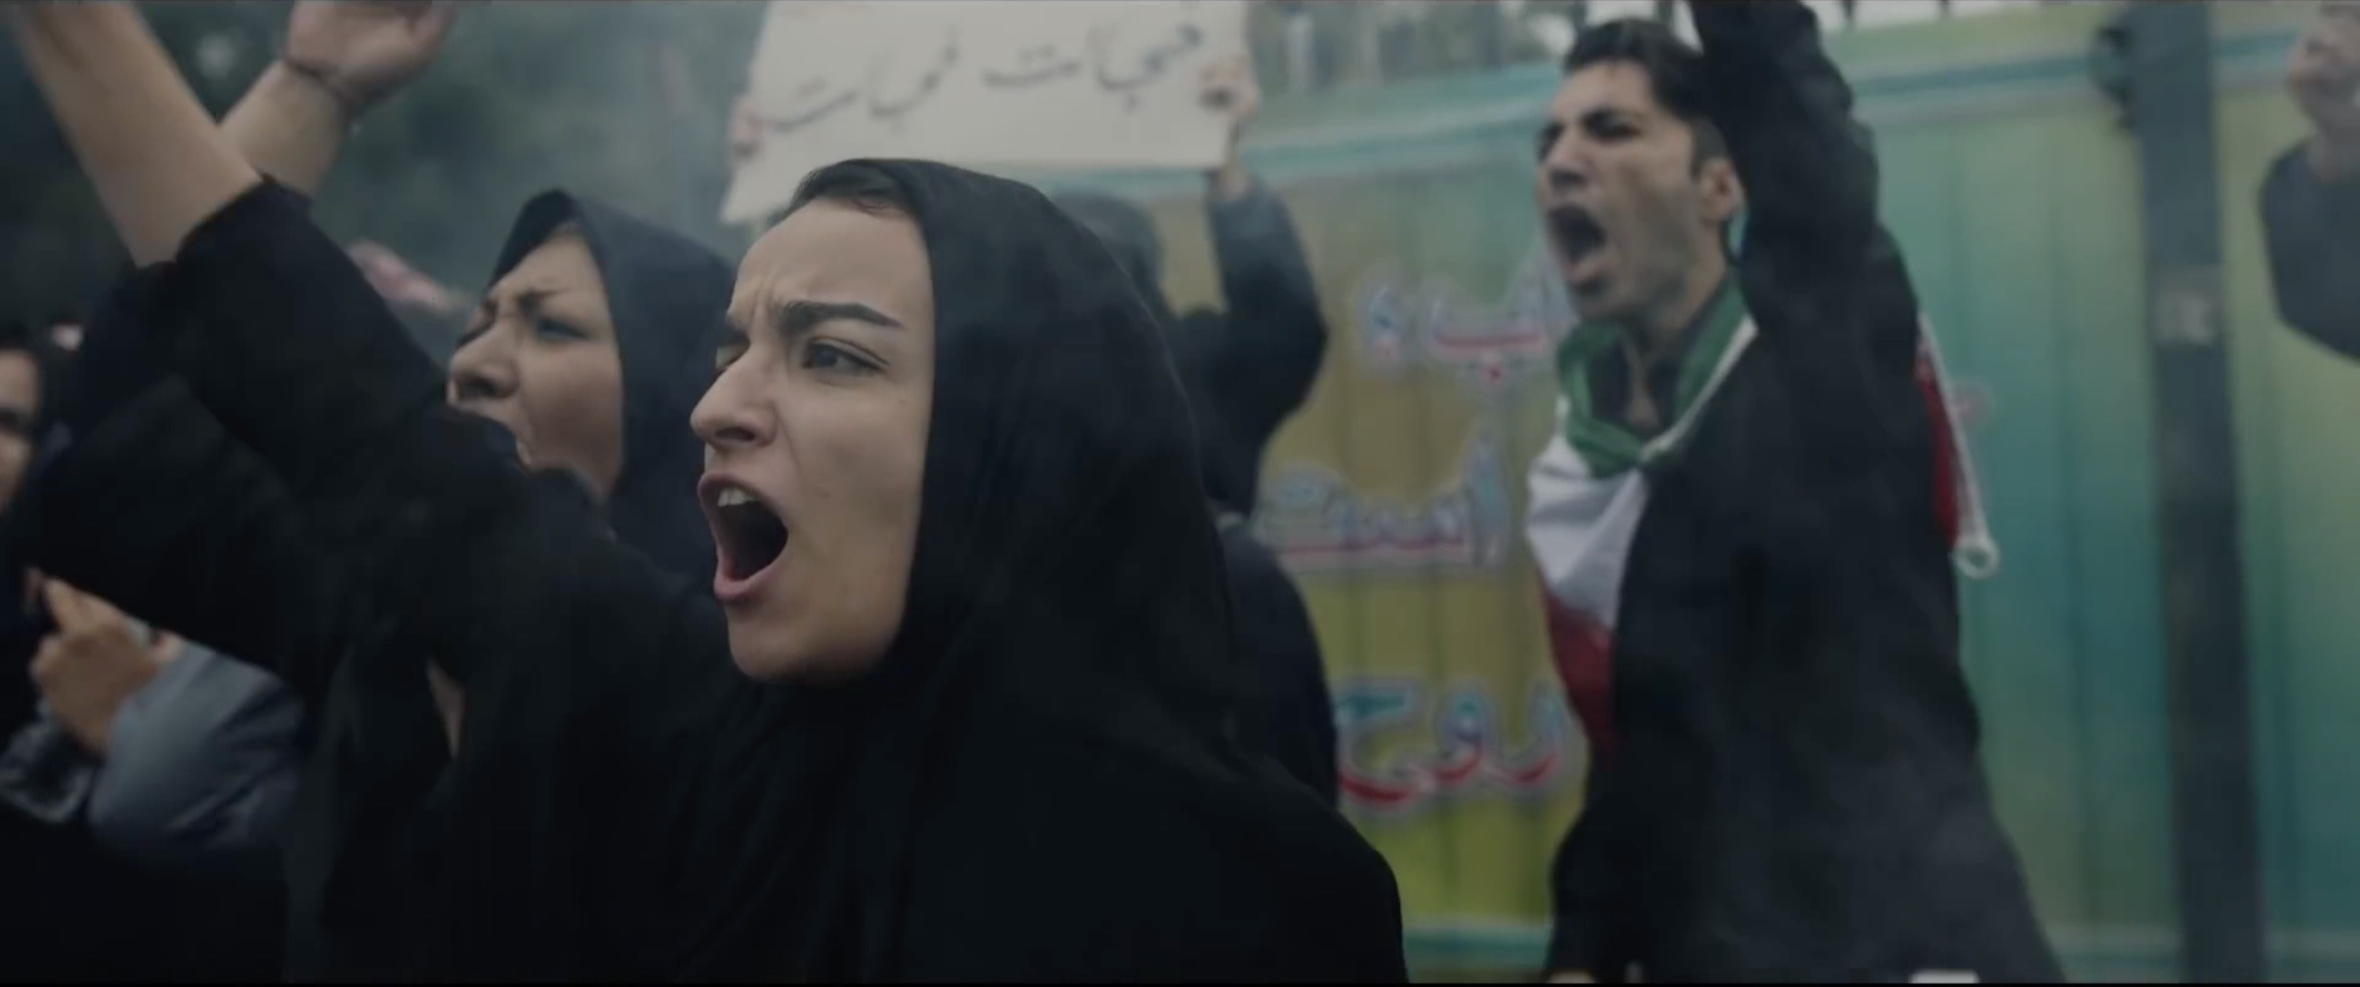 Может ли кино примирить нации? Рассуждают авторы шпионского сериала «Тегеран» о конфликте Ирана и Израиля (фото 13)